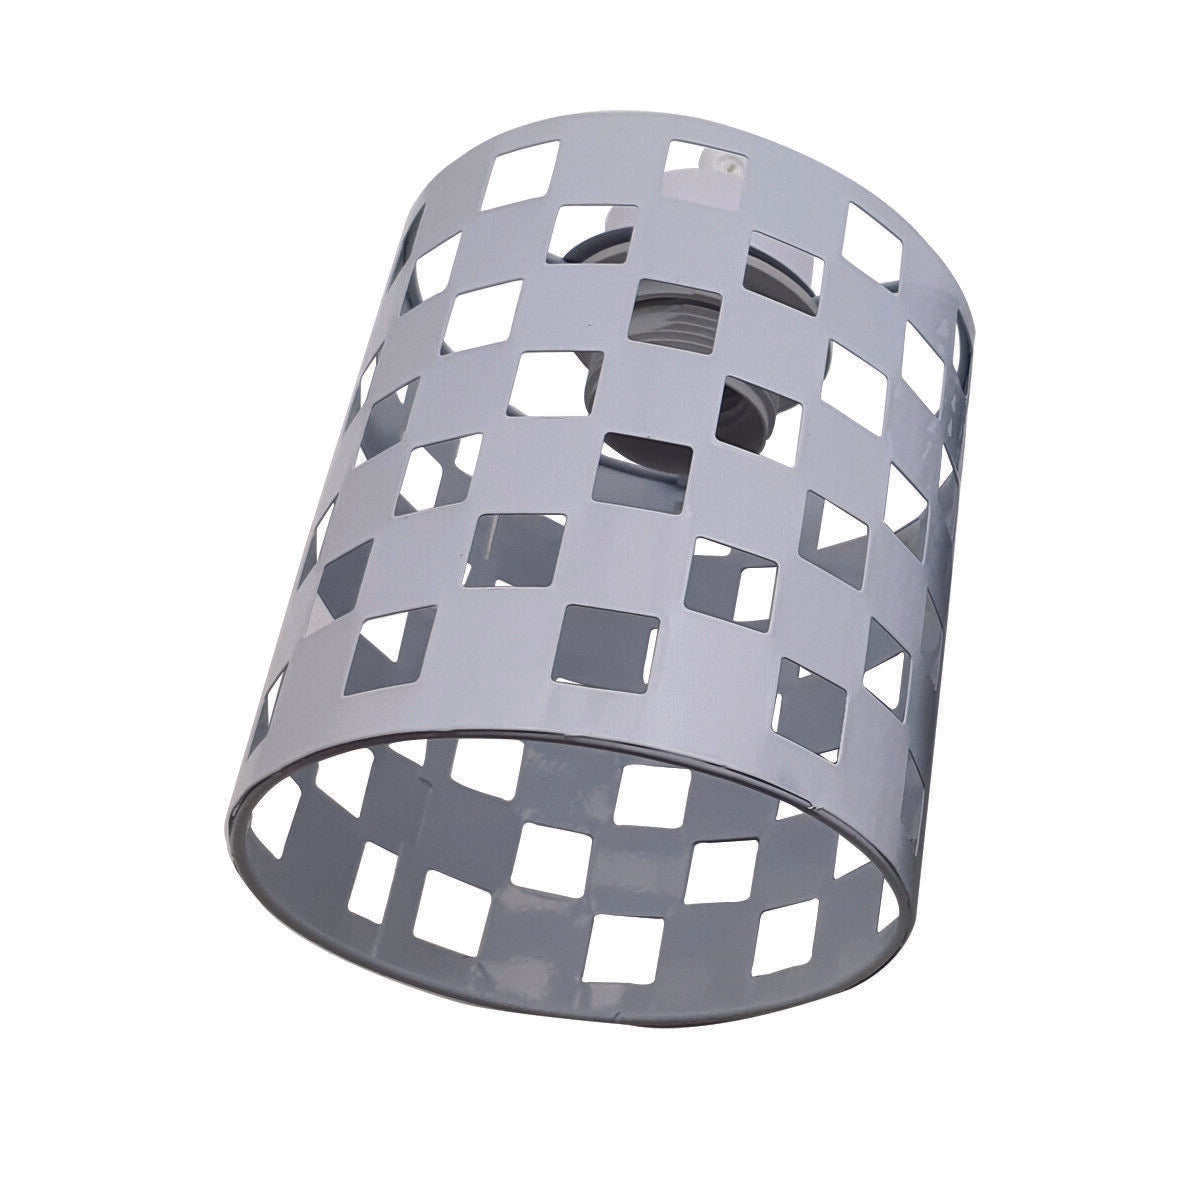 Lampenschirm DIY Metall Puzzle Lampe Schirm Hängelampe Stehlampe Fass Designs